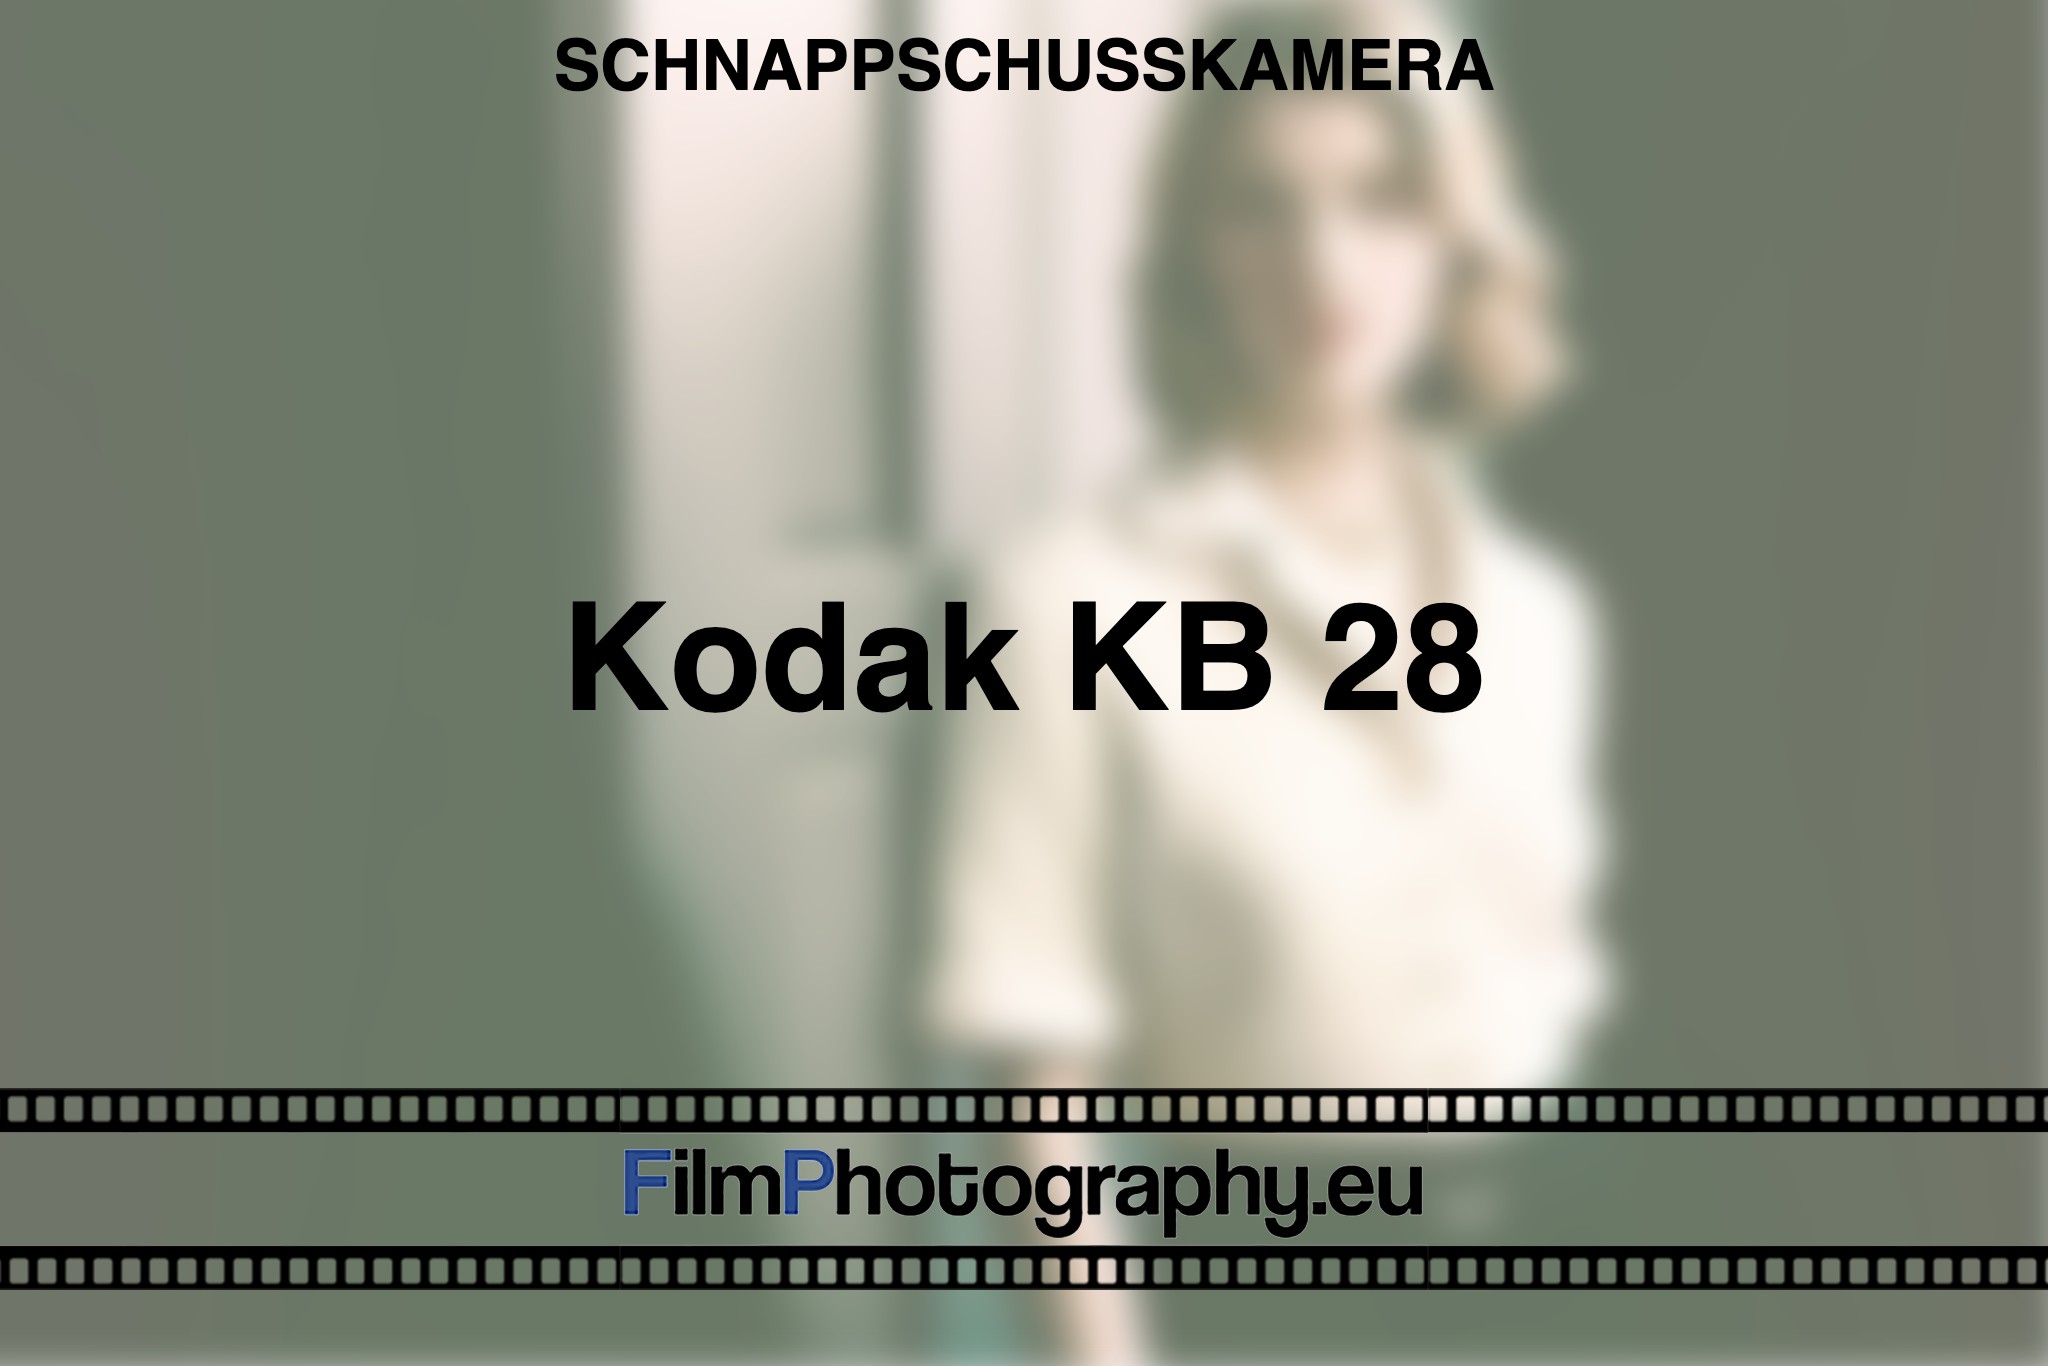 kodak-kb-28-schnappschusskamera-bnv